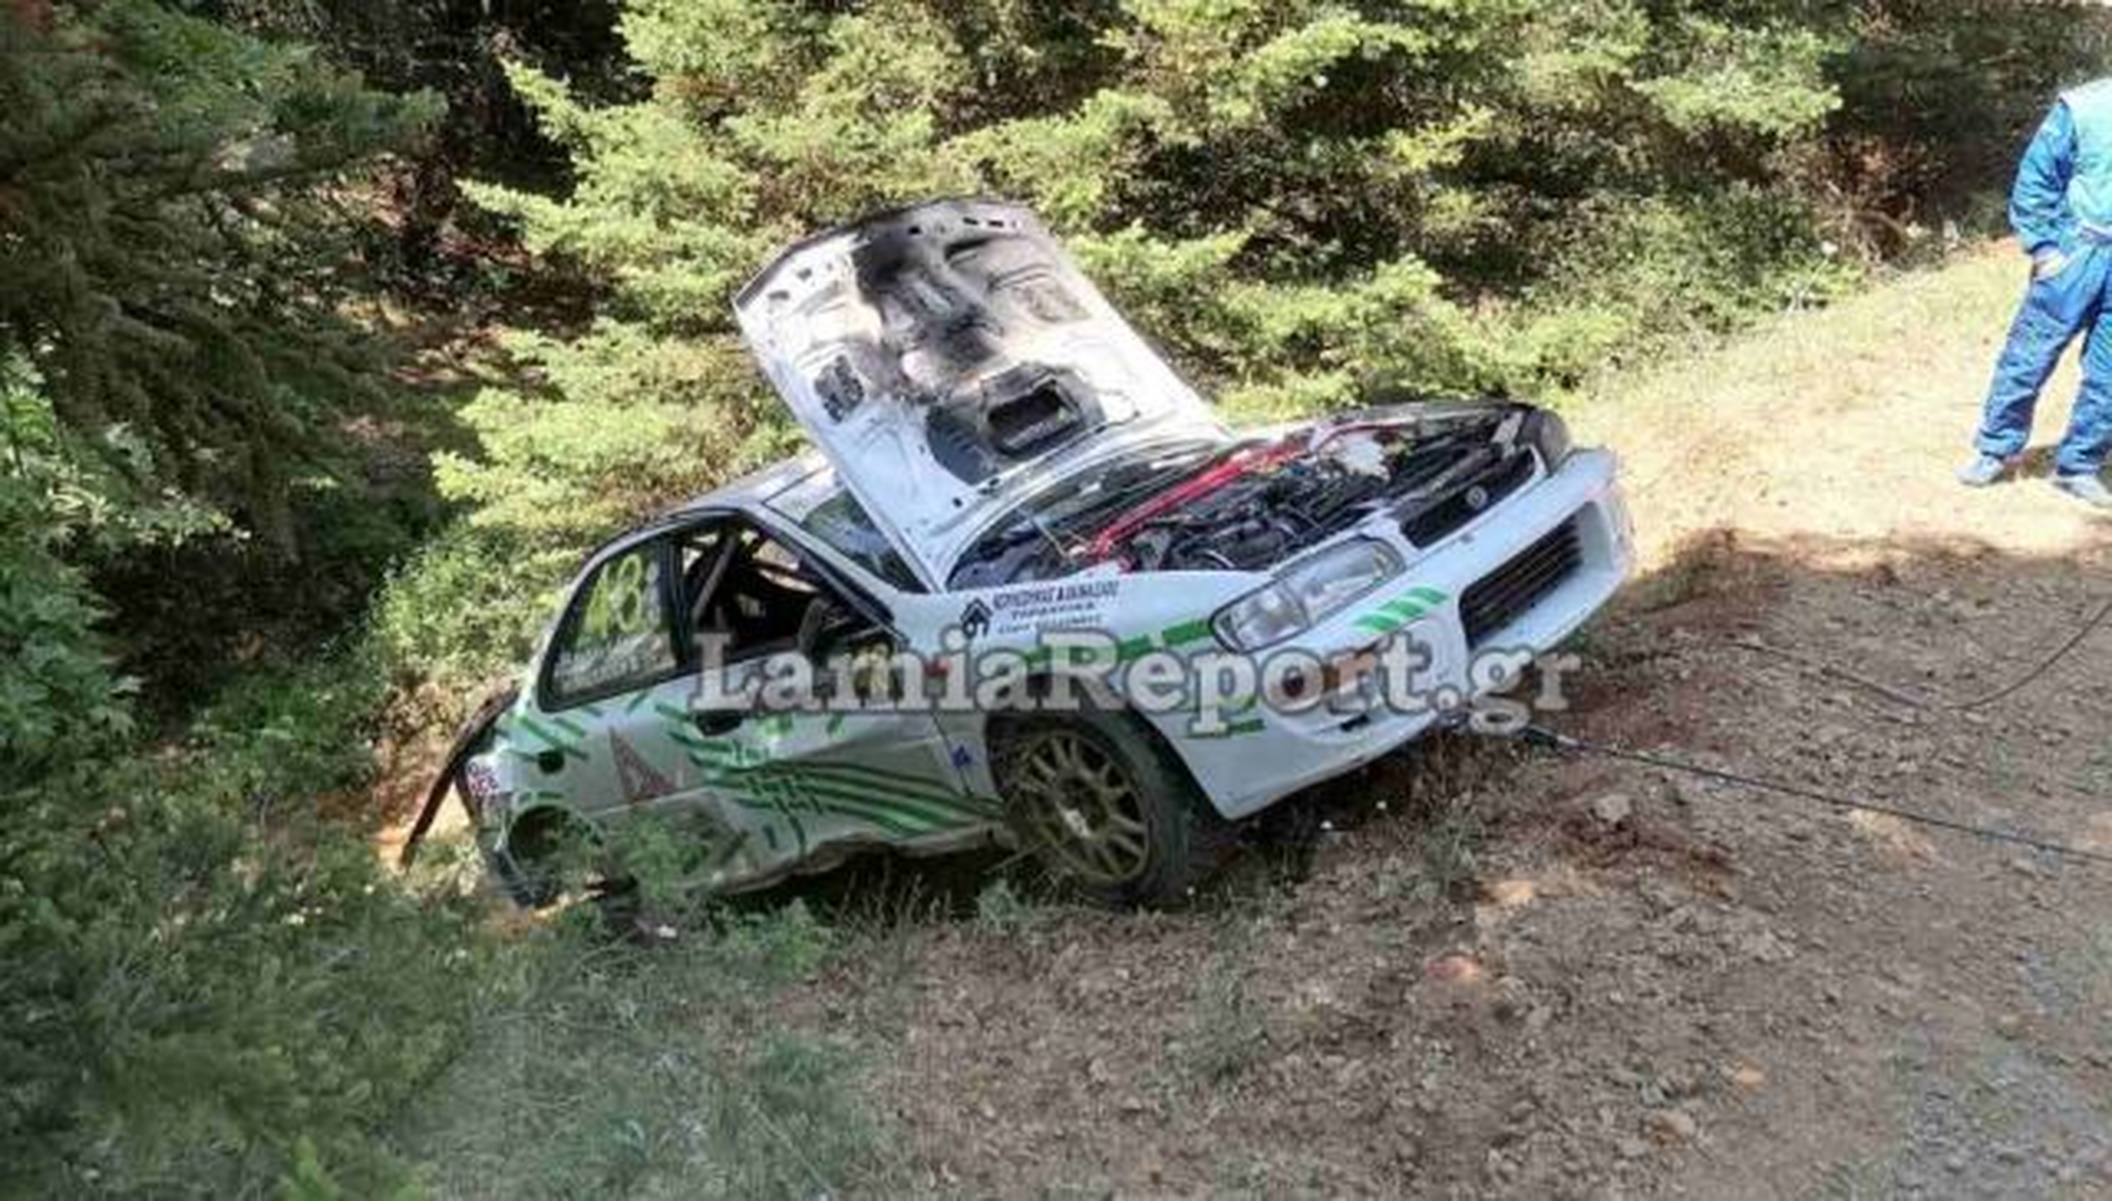 Ράλλυ Φθιώτιδας: Ατύχημα για αγωνιστικό αυτοκίνητο σε «ακροπολική» διαδρομή – Φωτογραφίες από το «πληγωμένο» Subaru Impreza